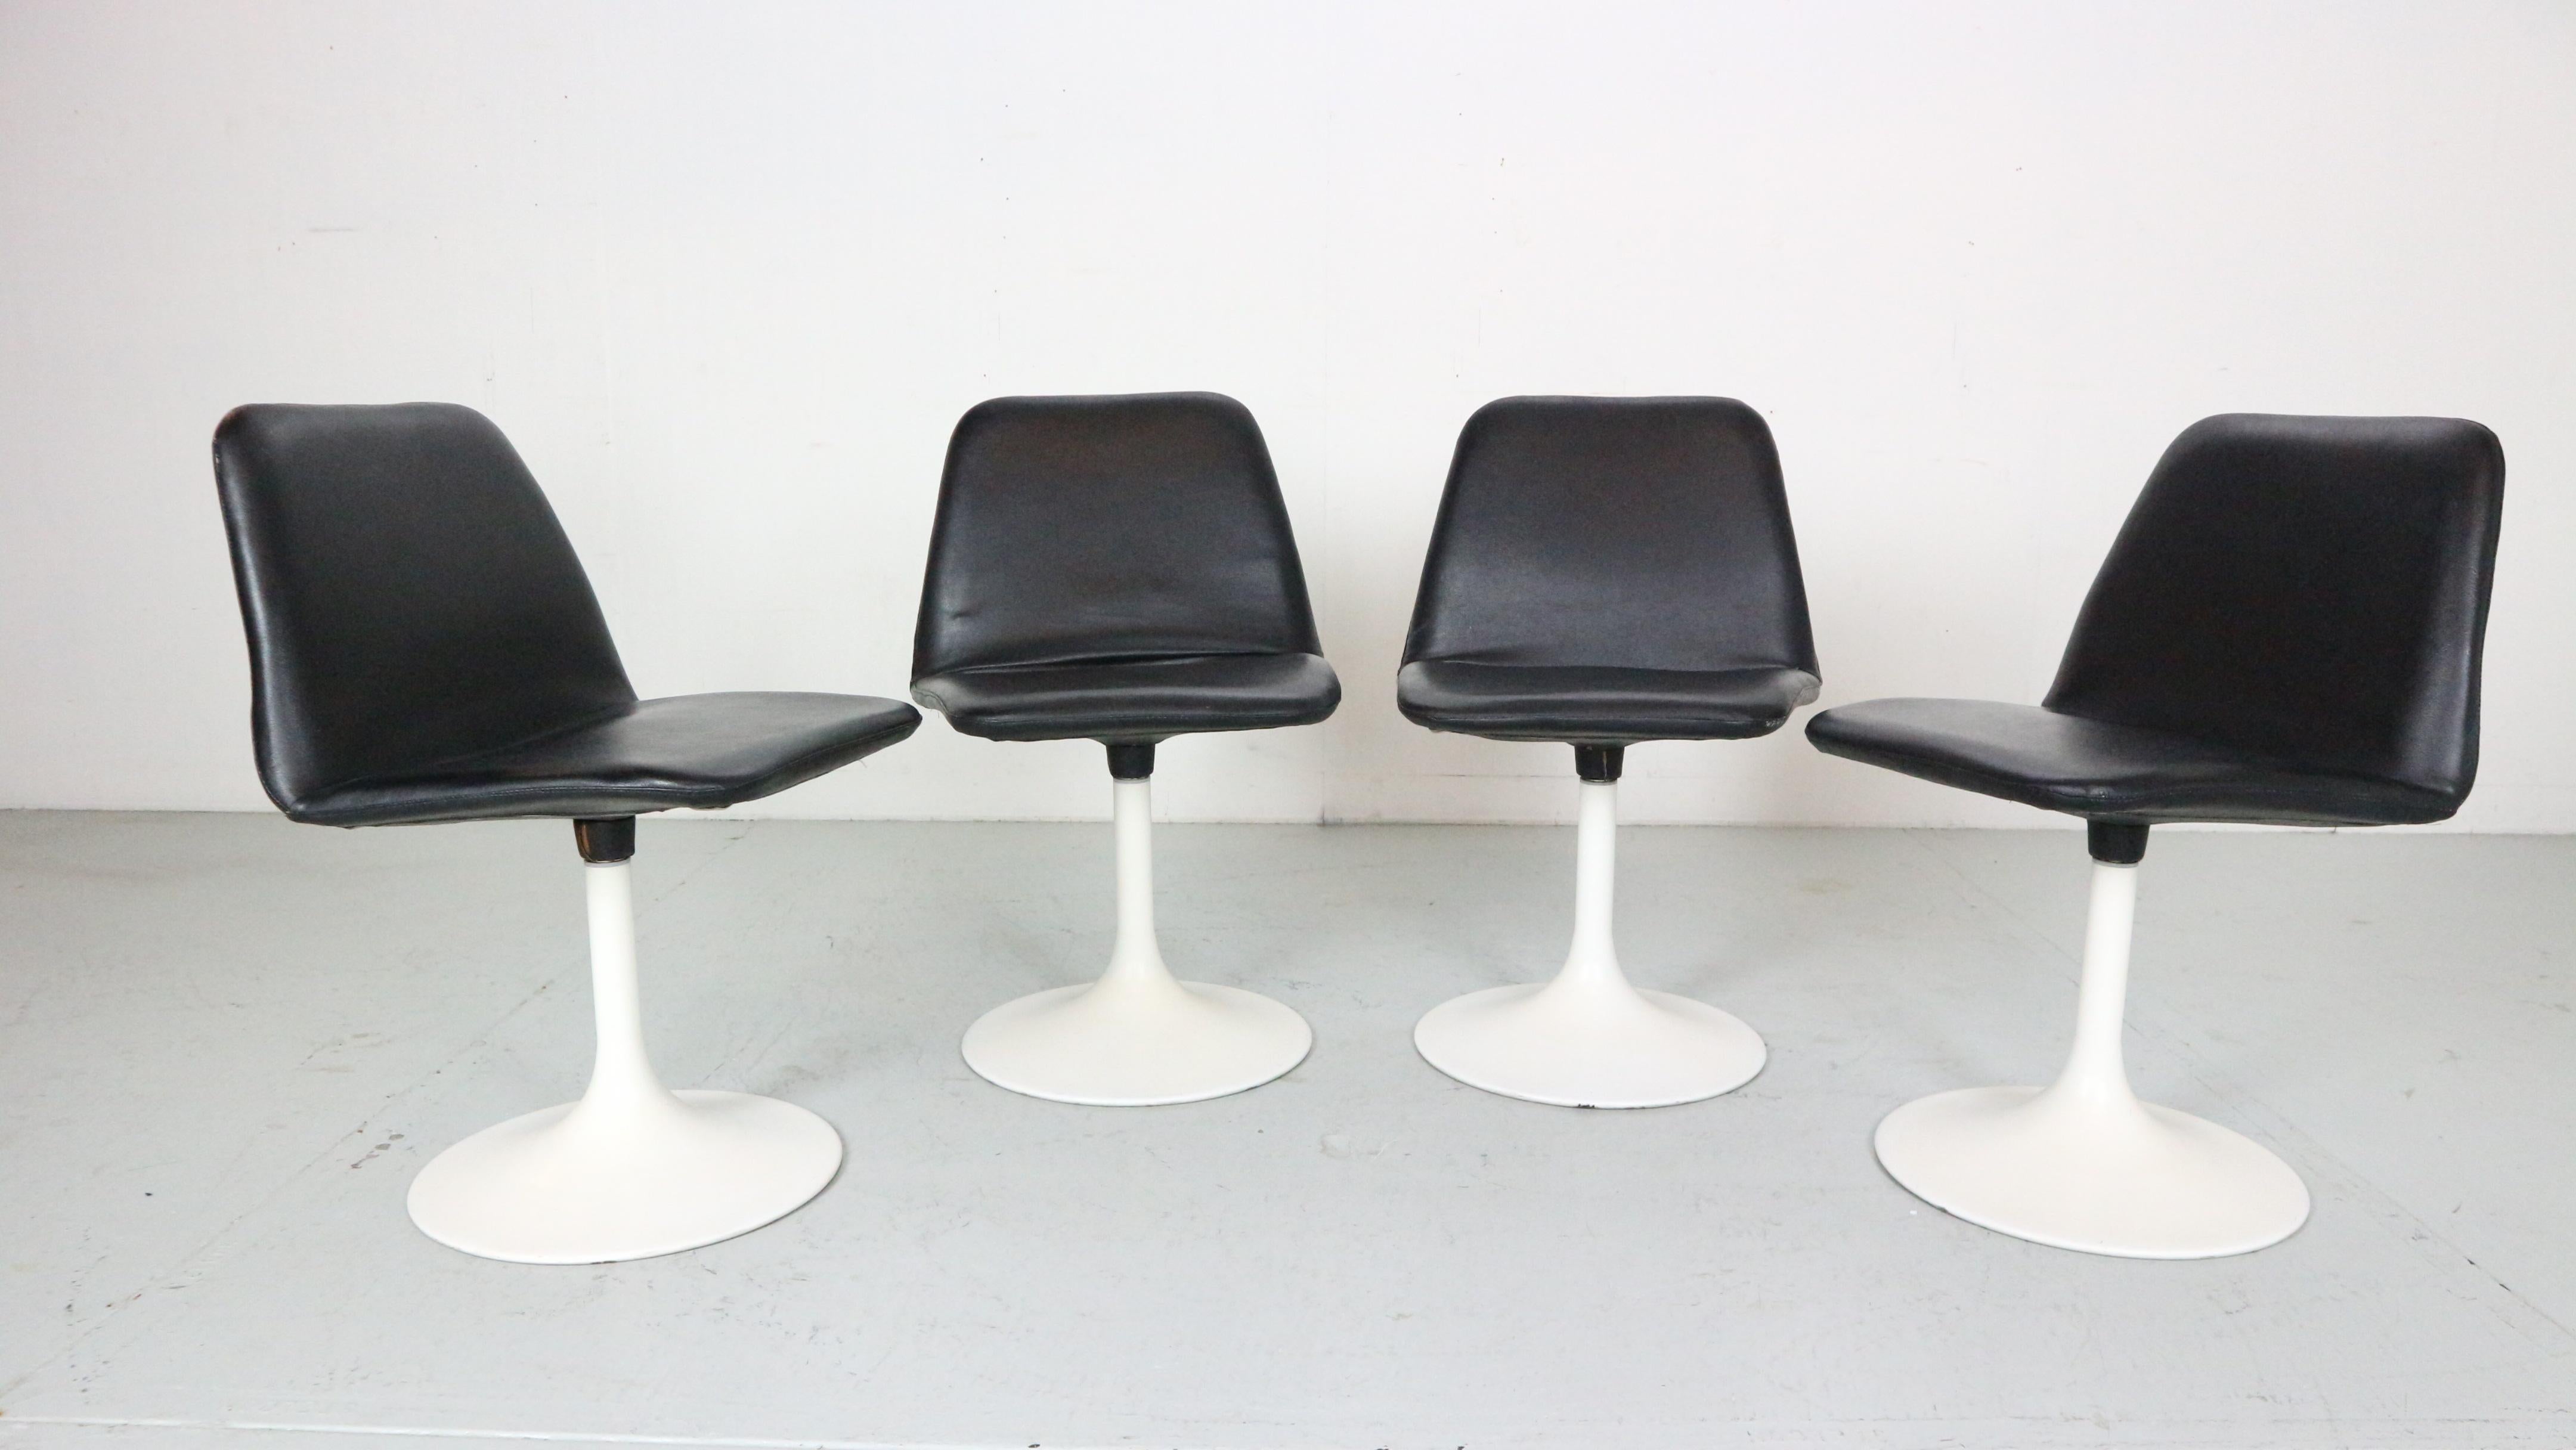 Ensemble de 4 chaises de salle à manger pivotantes de style moderne scandinave, conçu par Börje Johanson pour Johanson Design/One en Suède.

Modèle 